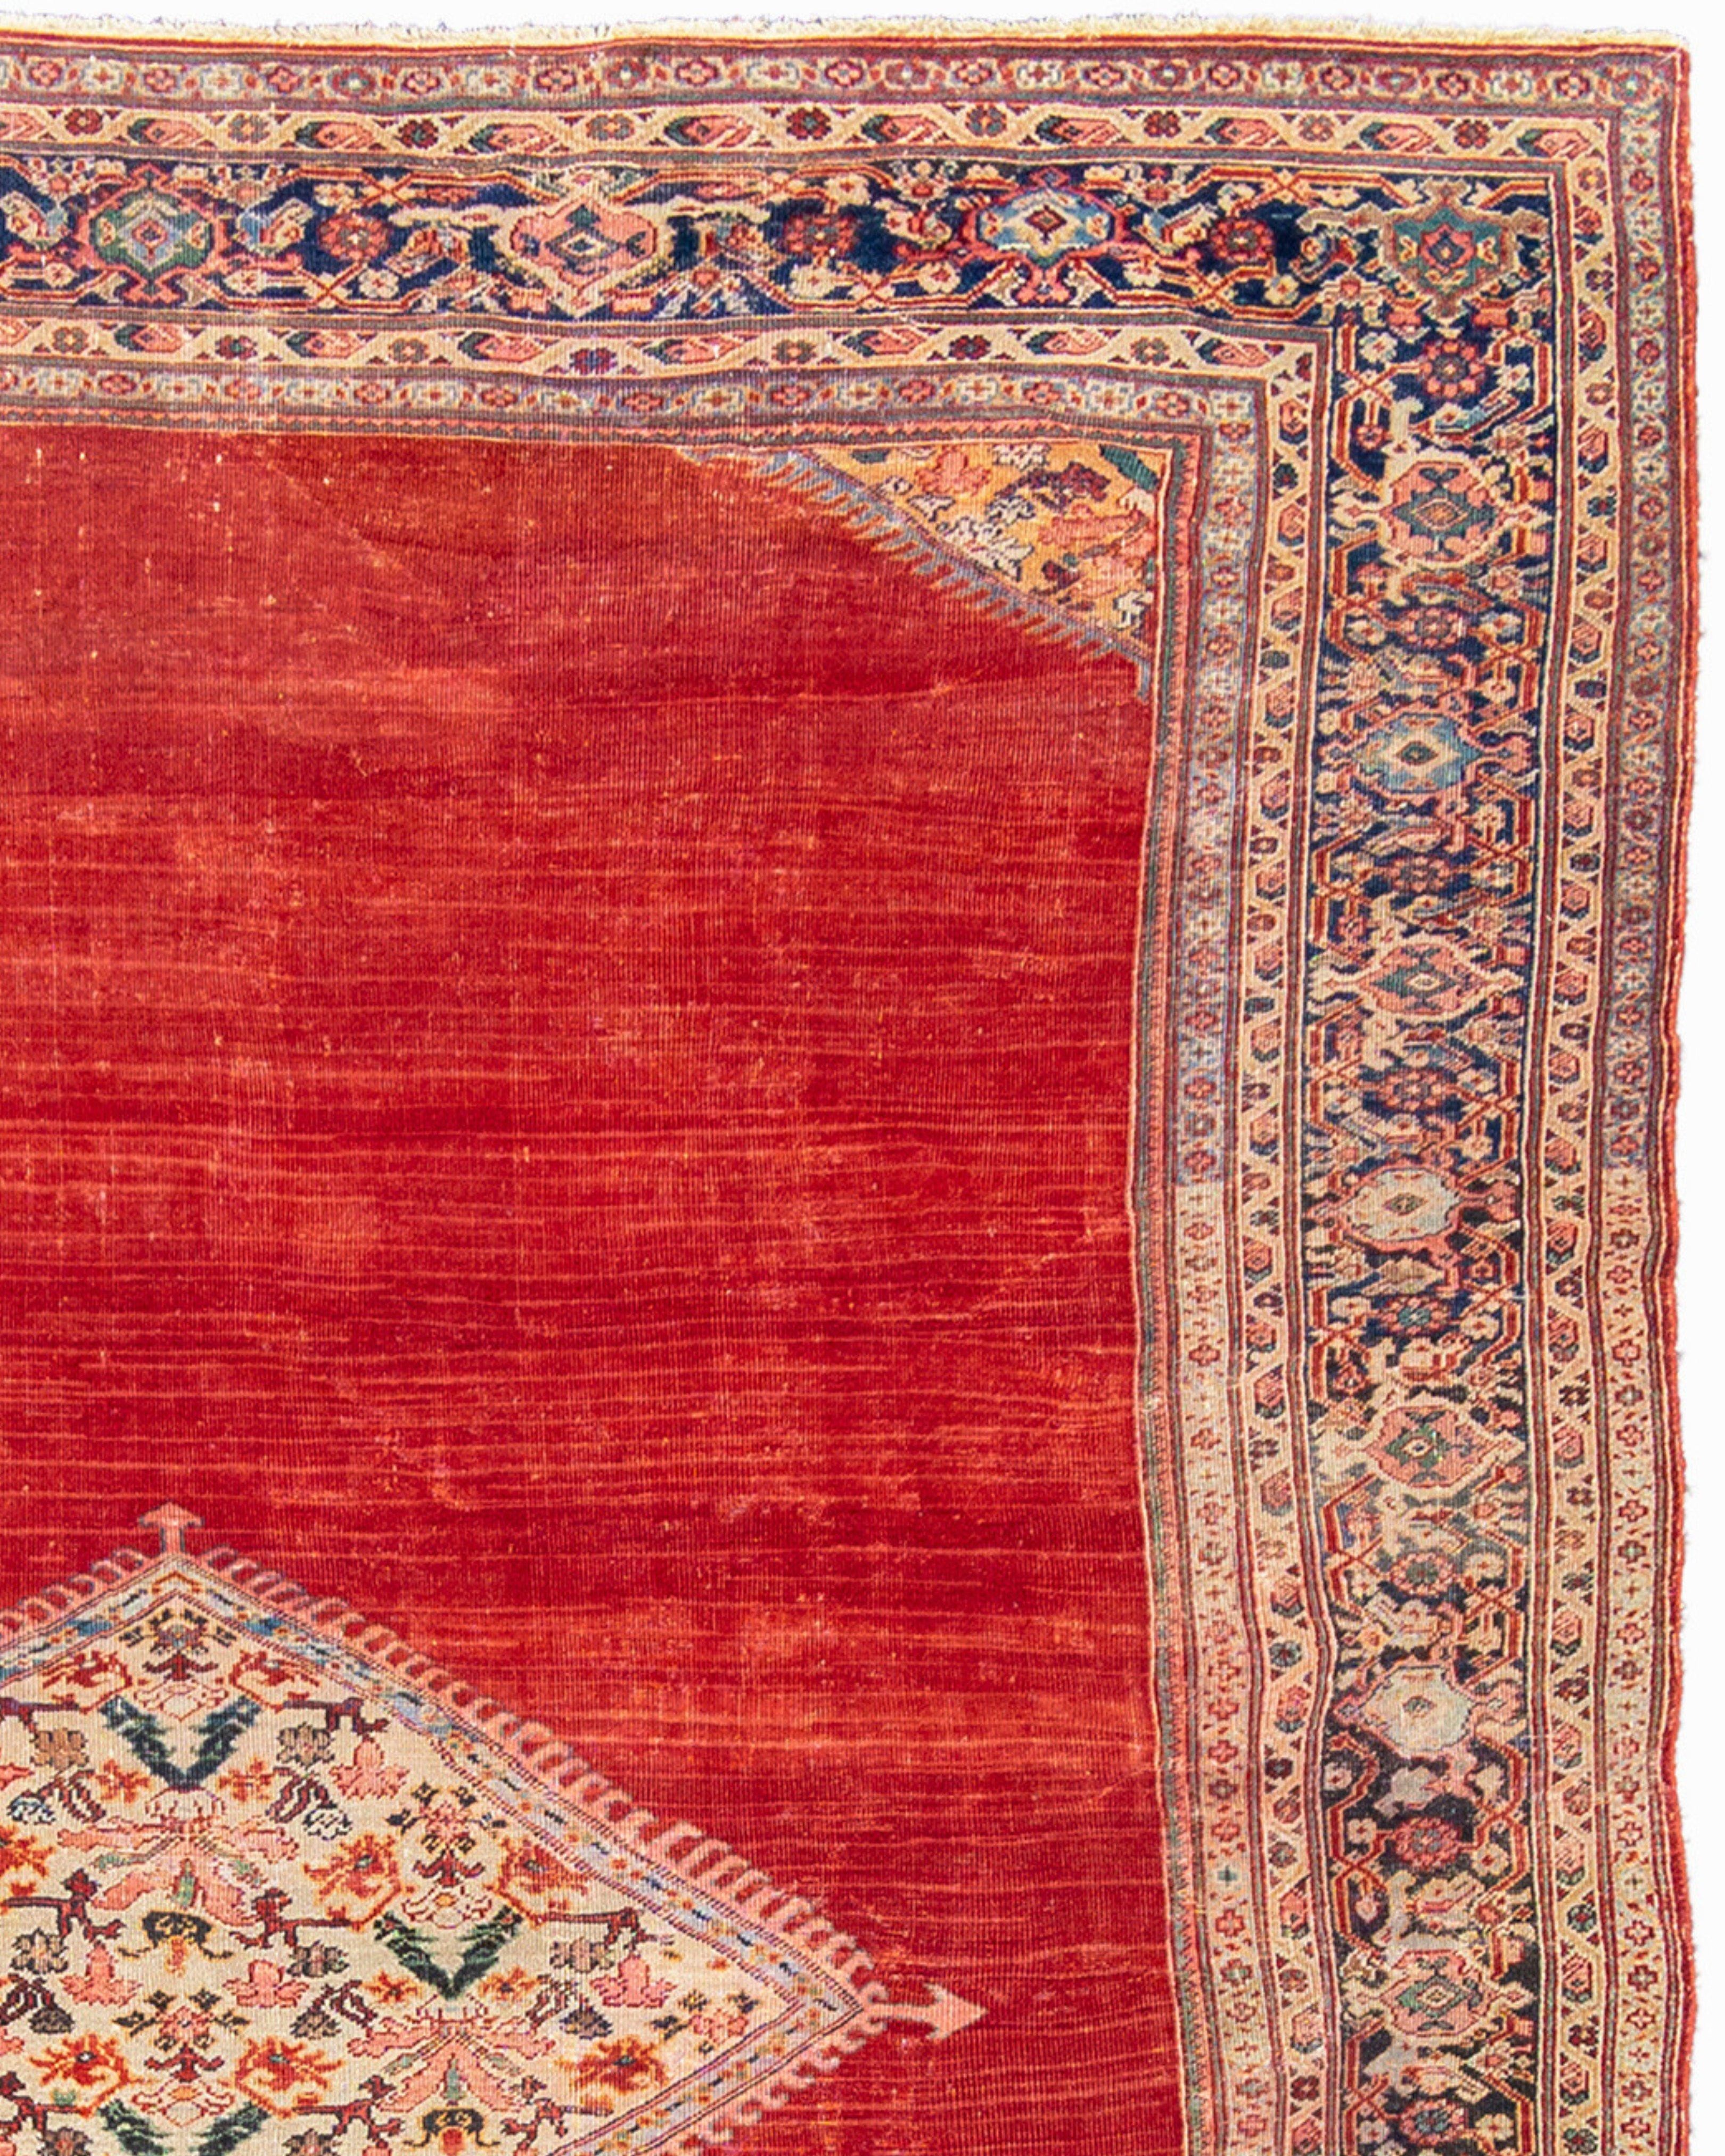 Antiker großer roter persischer Mahal-Teppich, um 1900

Zusätzliche Informationen:
Abmessungen: 9'2